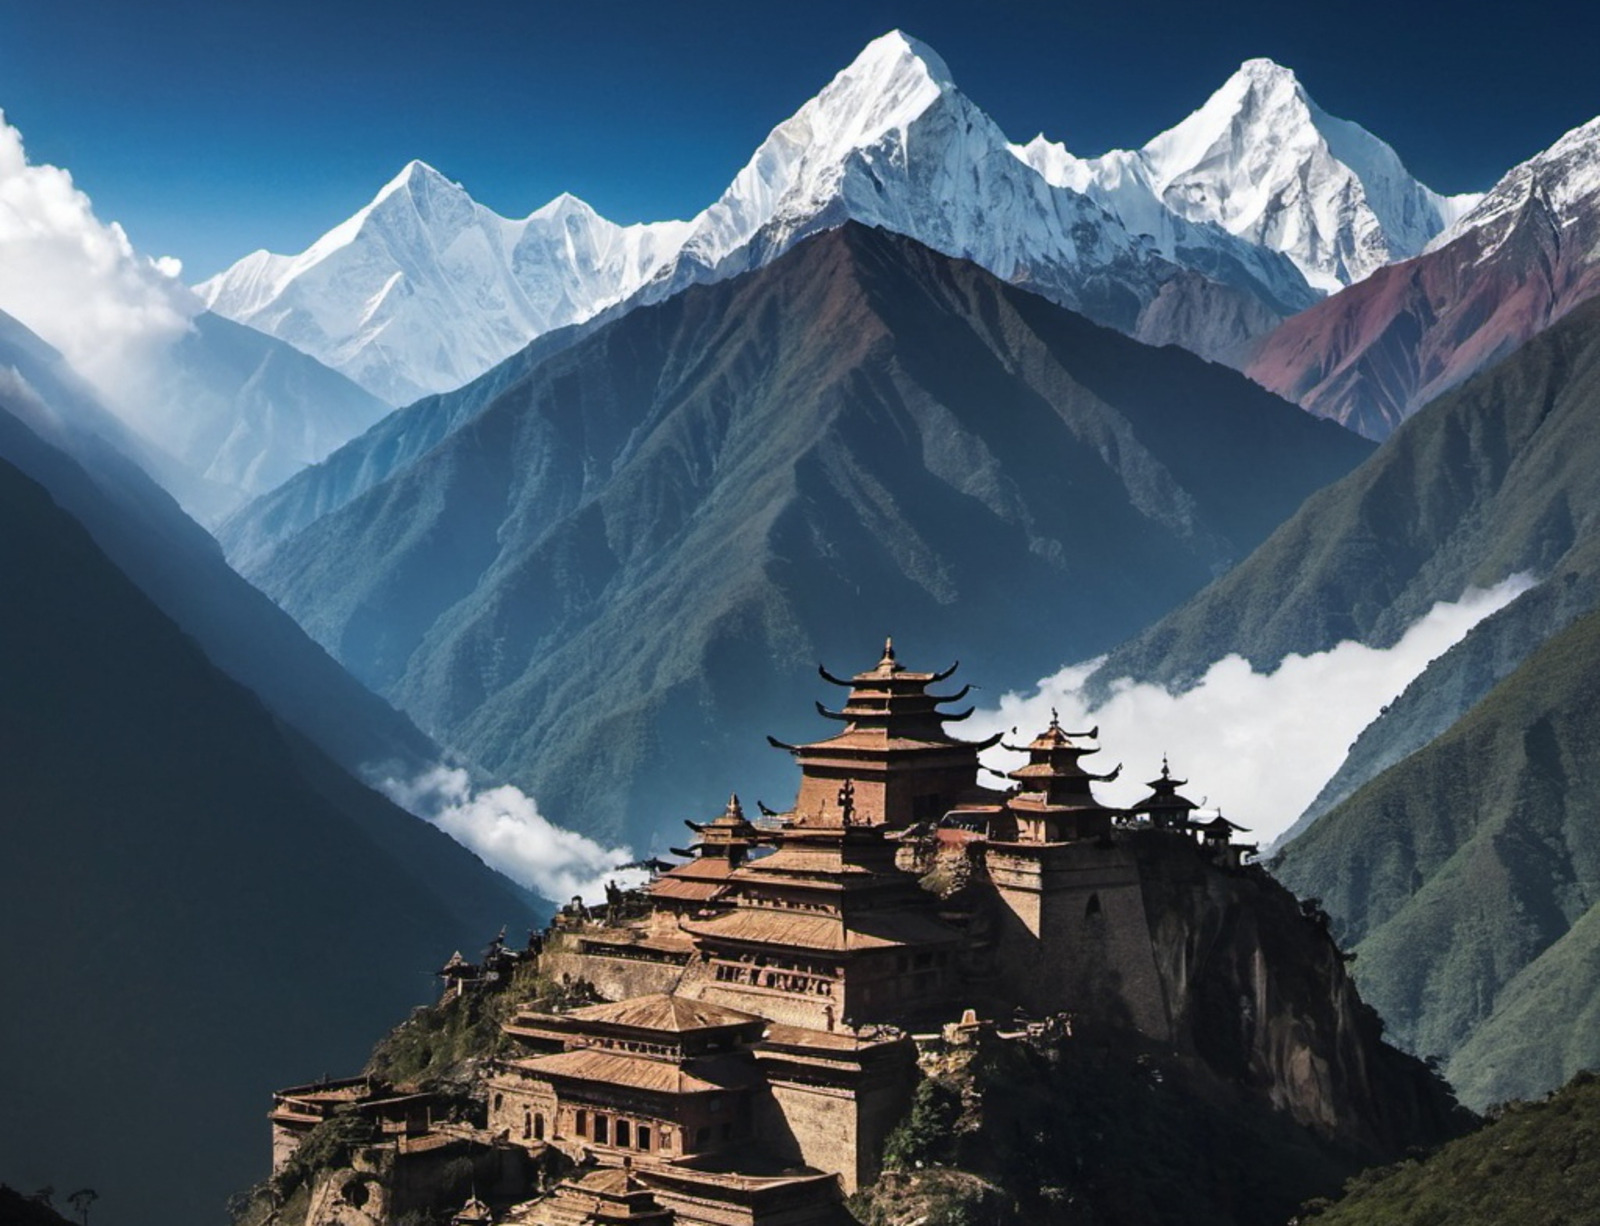 Image générée par intelligence artificielle d’une cité perdue dans l’Himalaya. © OpenArt.ai